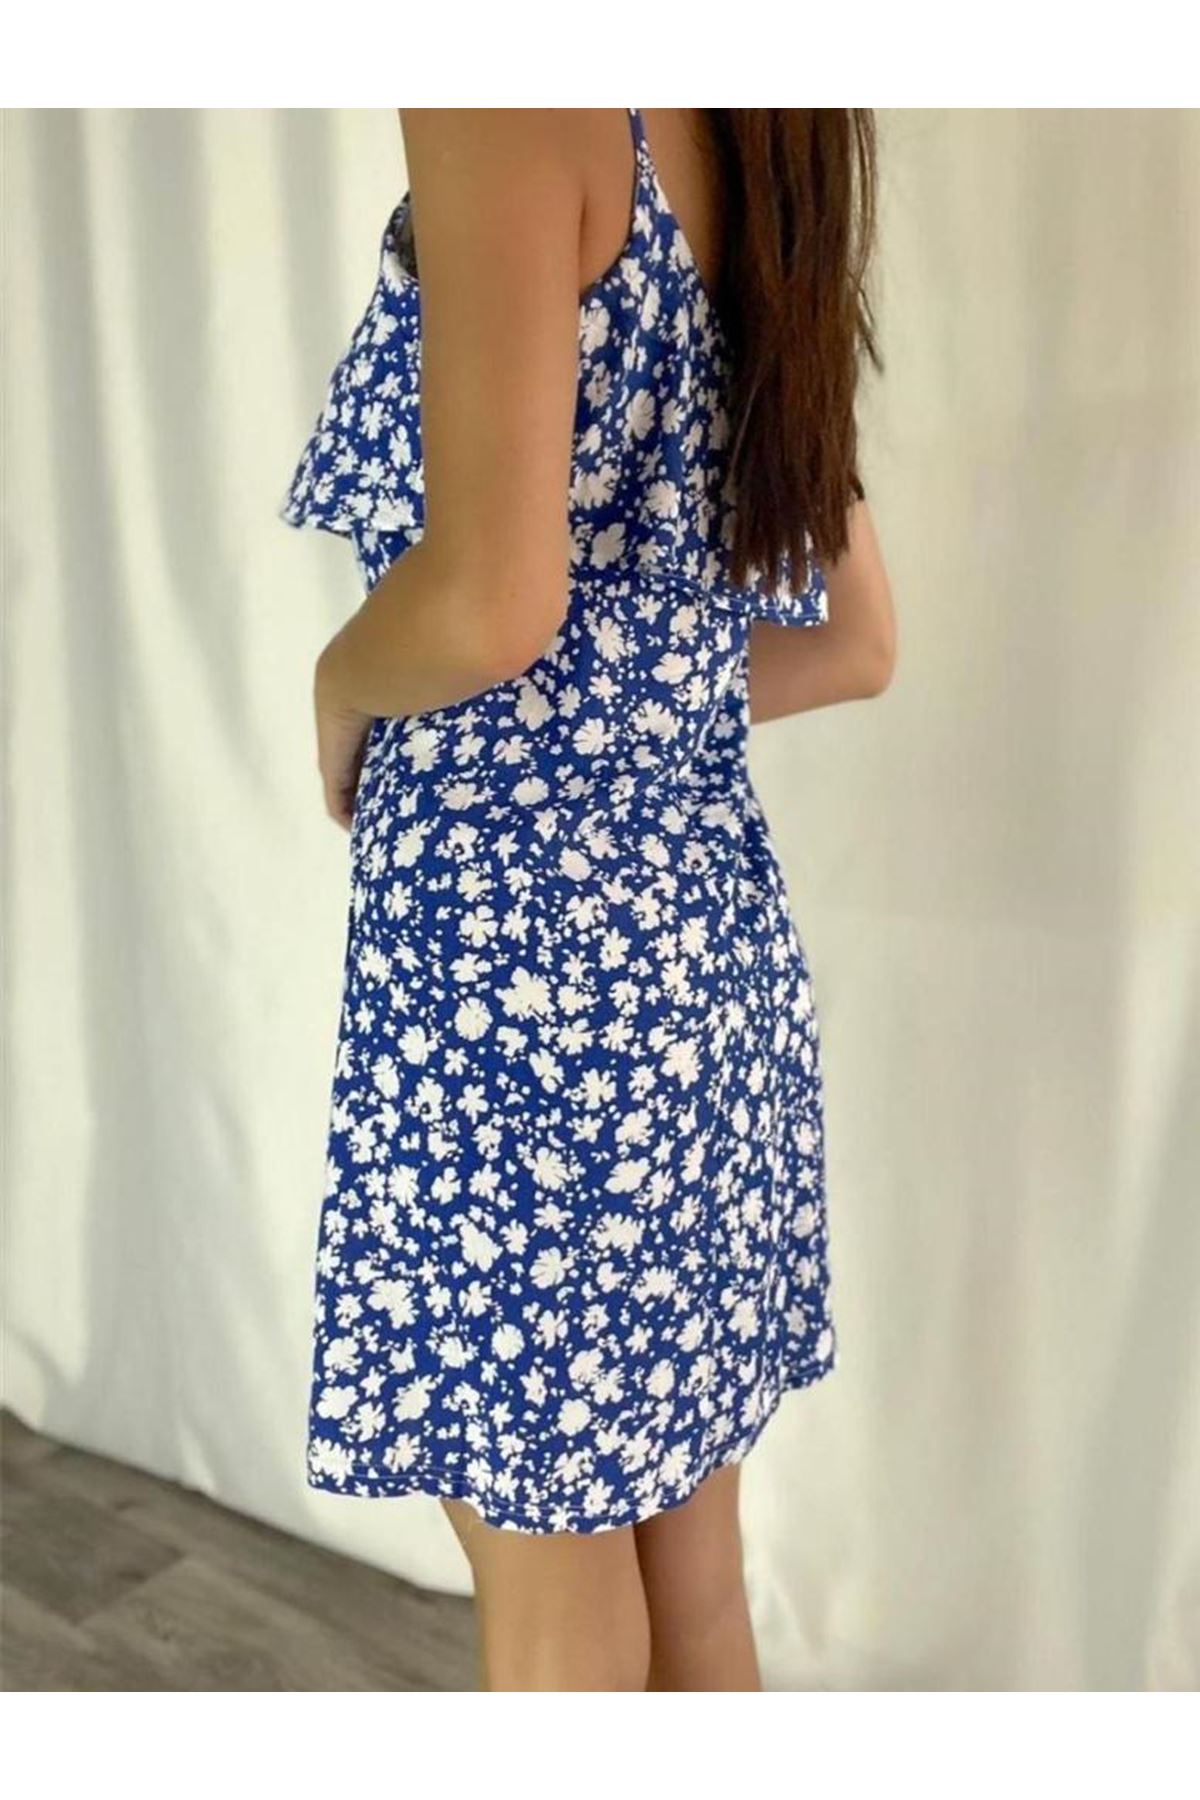 Kadın Mavi Askılı Kısa Pelerin Model Yazlık Dokuma Elbise 3D-2122